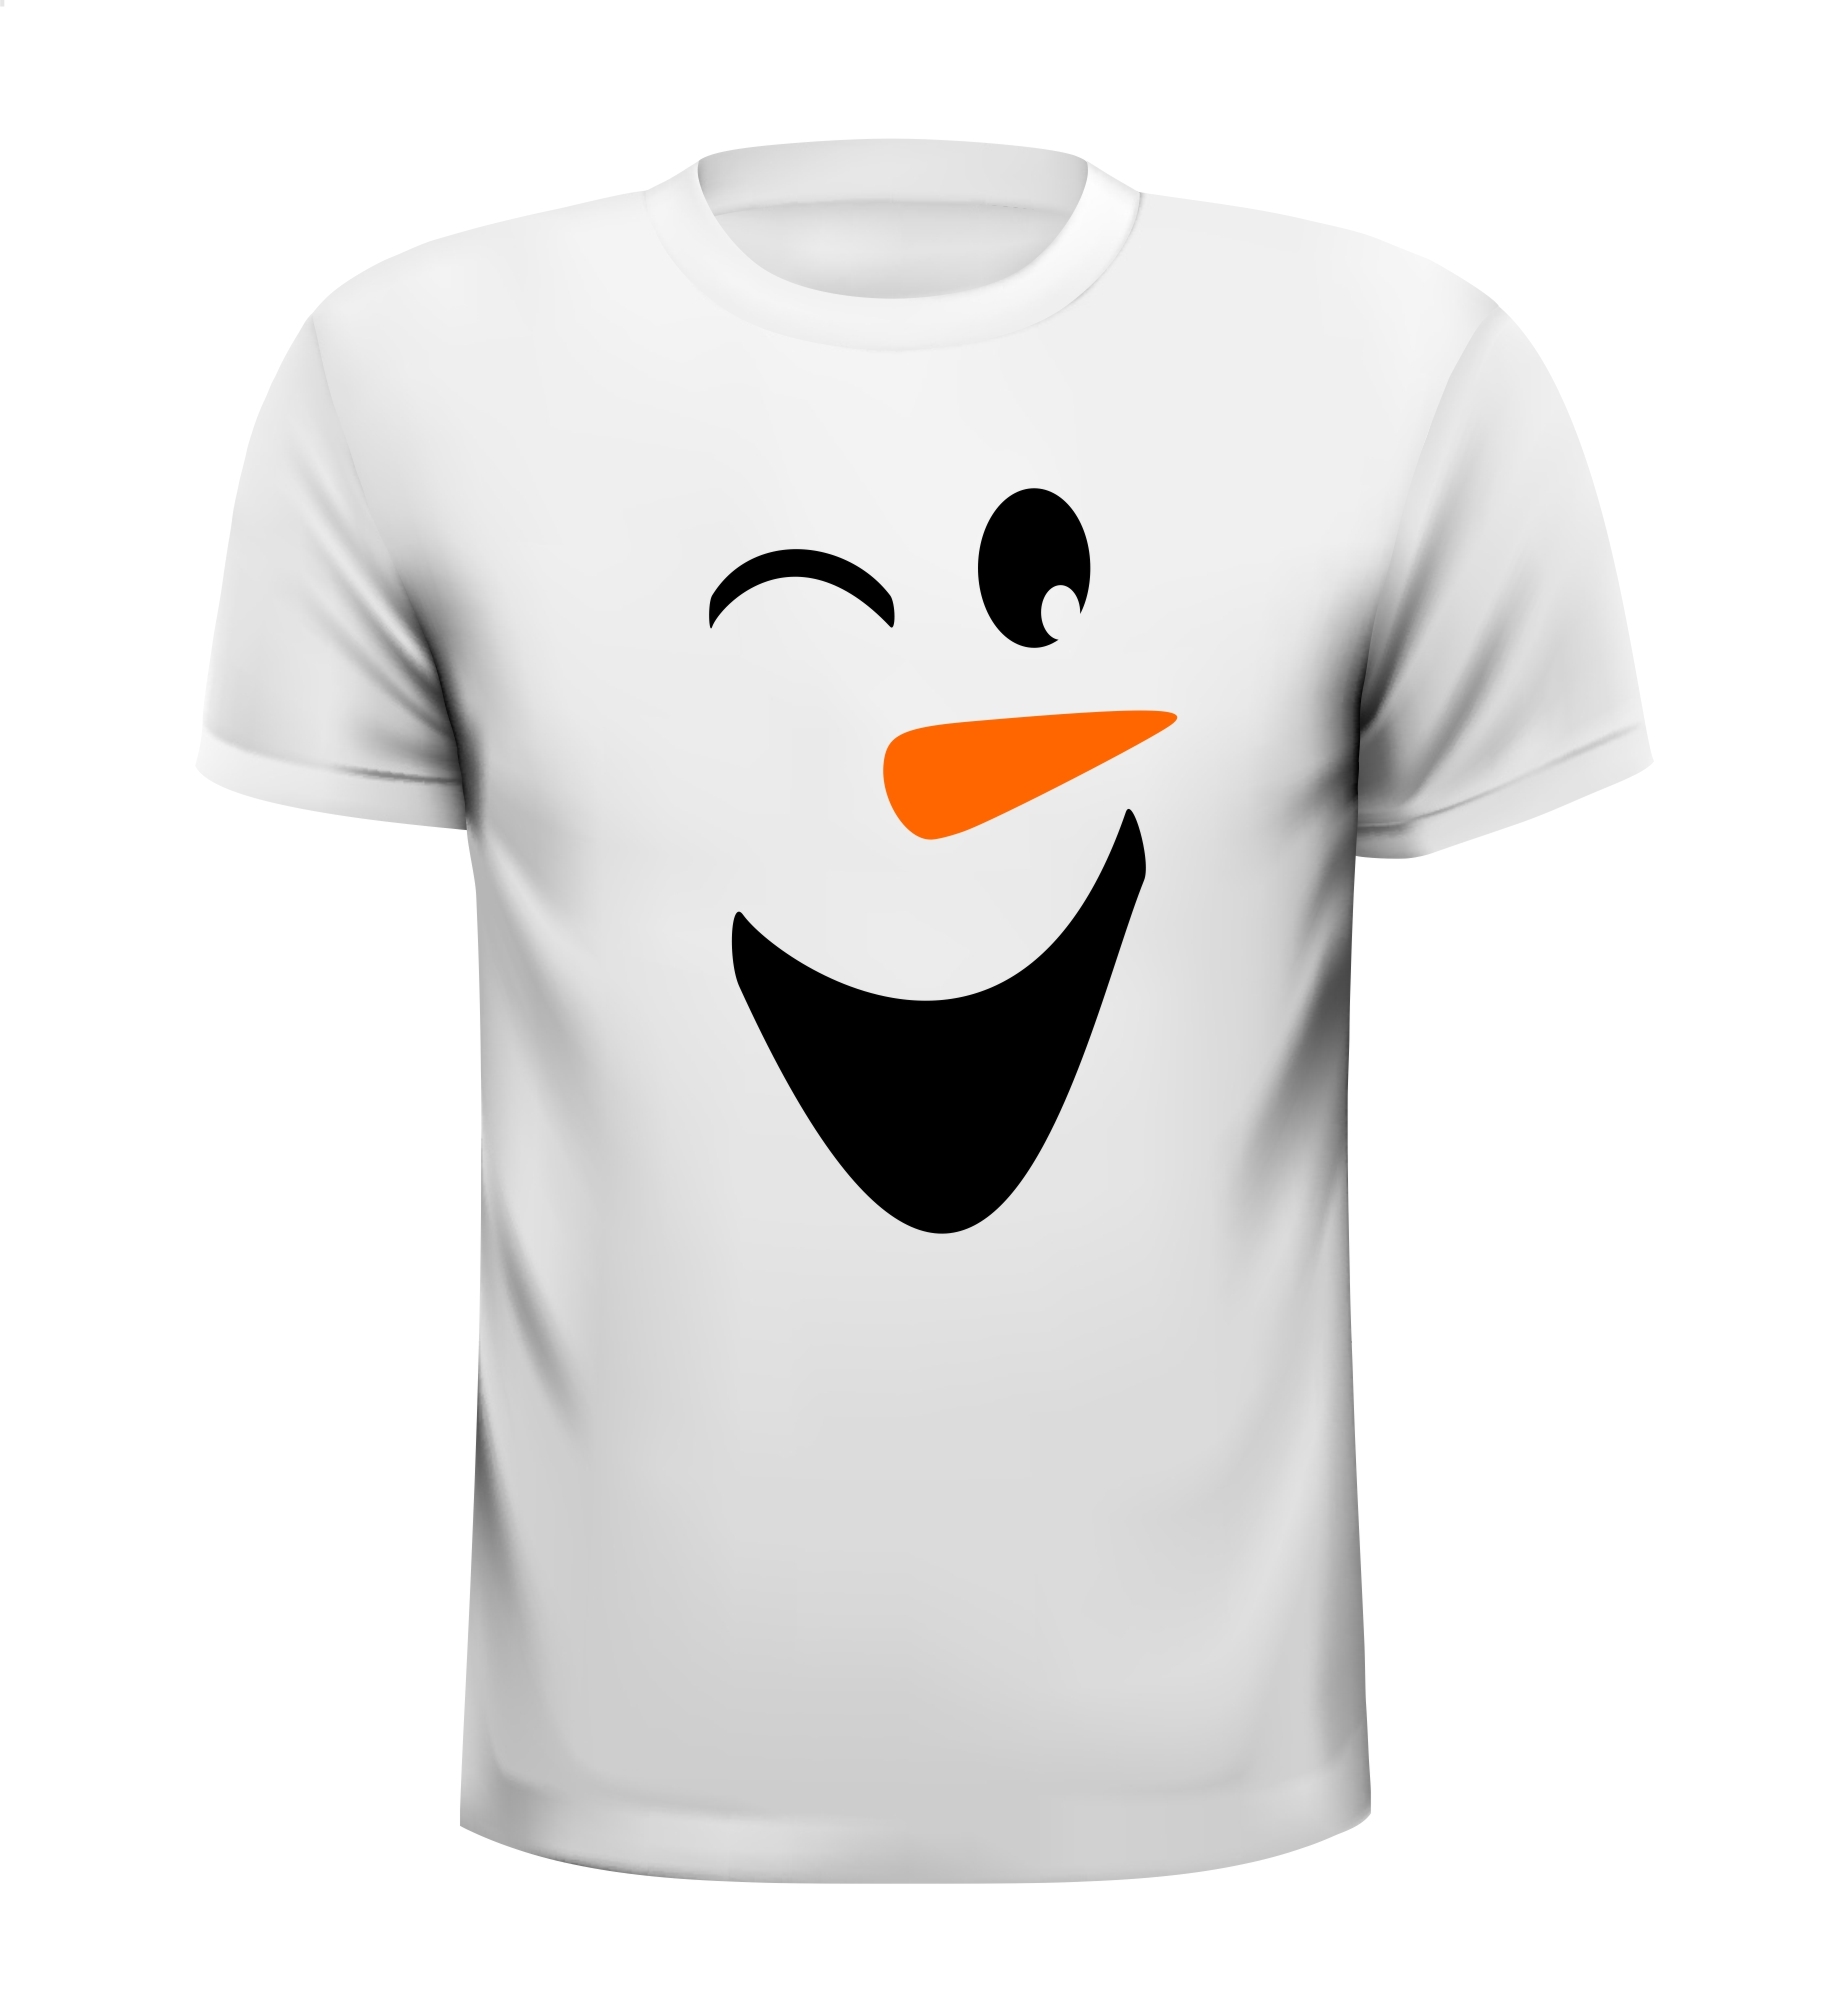 Wit T-shirt met een knipogende sneeuwpop